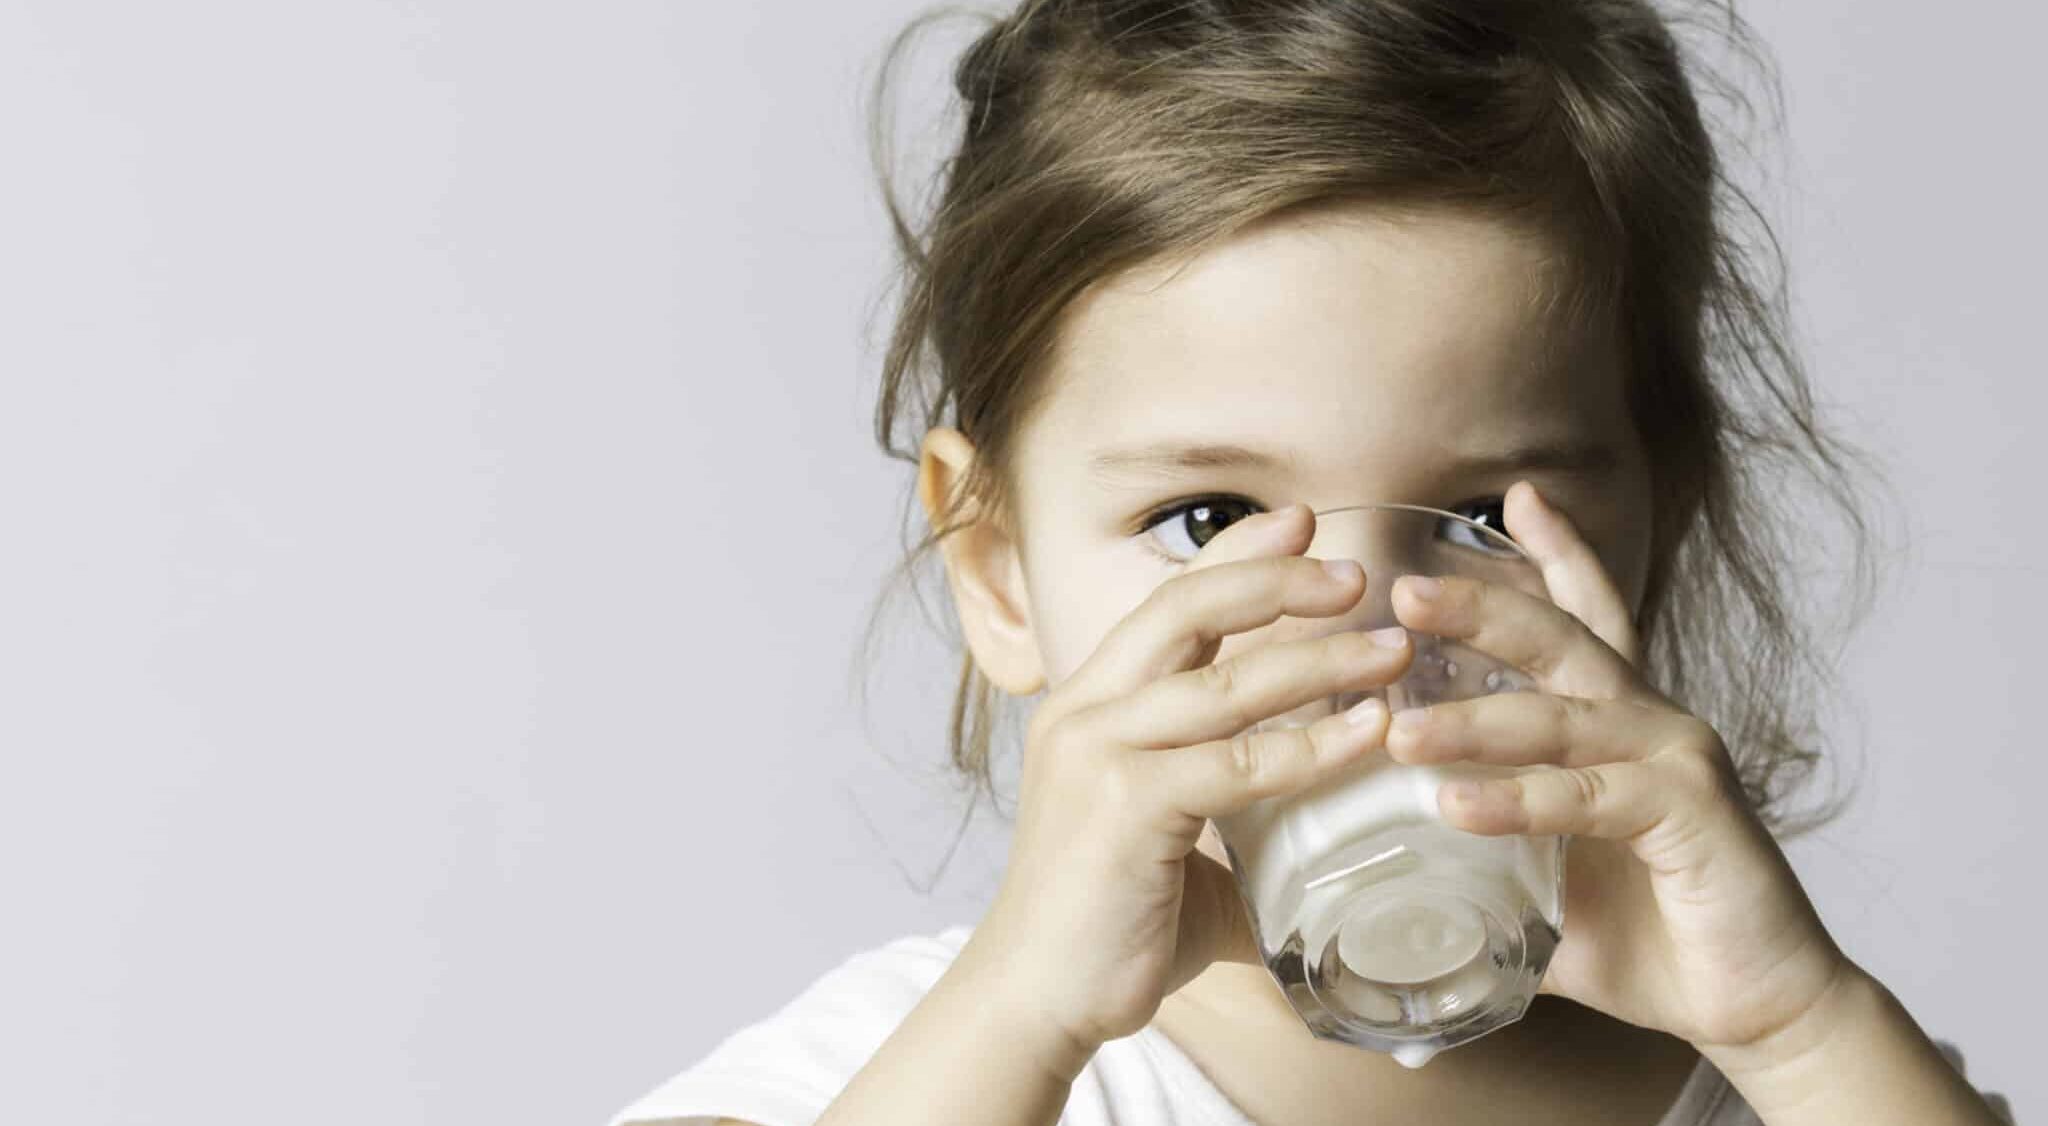 Enfant et consommation laitière